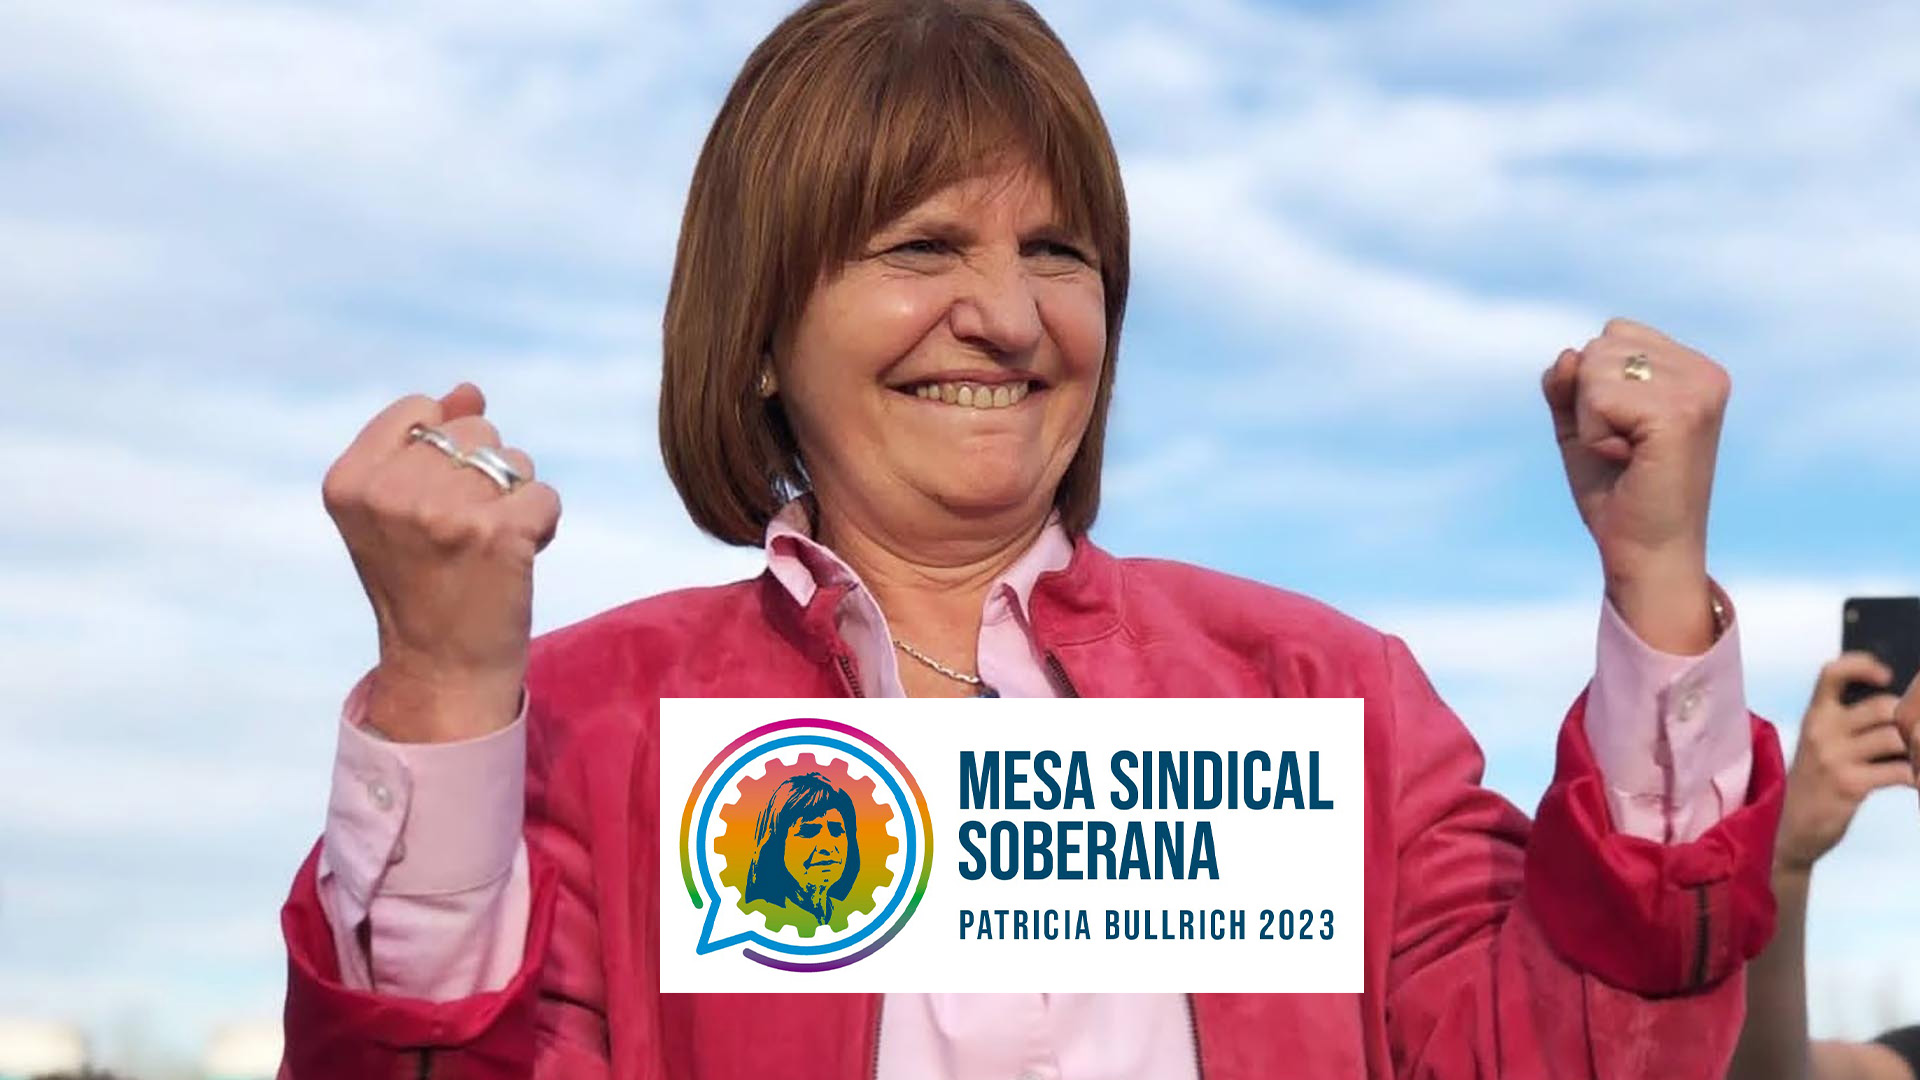 Patricia Bullrich y el logo de la flamante Mesa Sindical que promoverá su candidatura presidencial